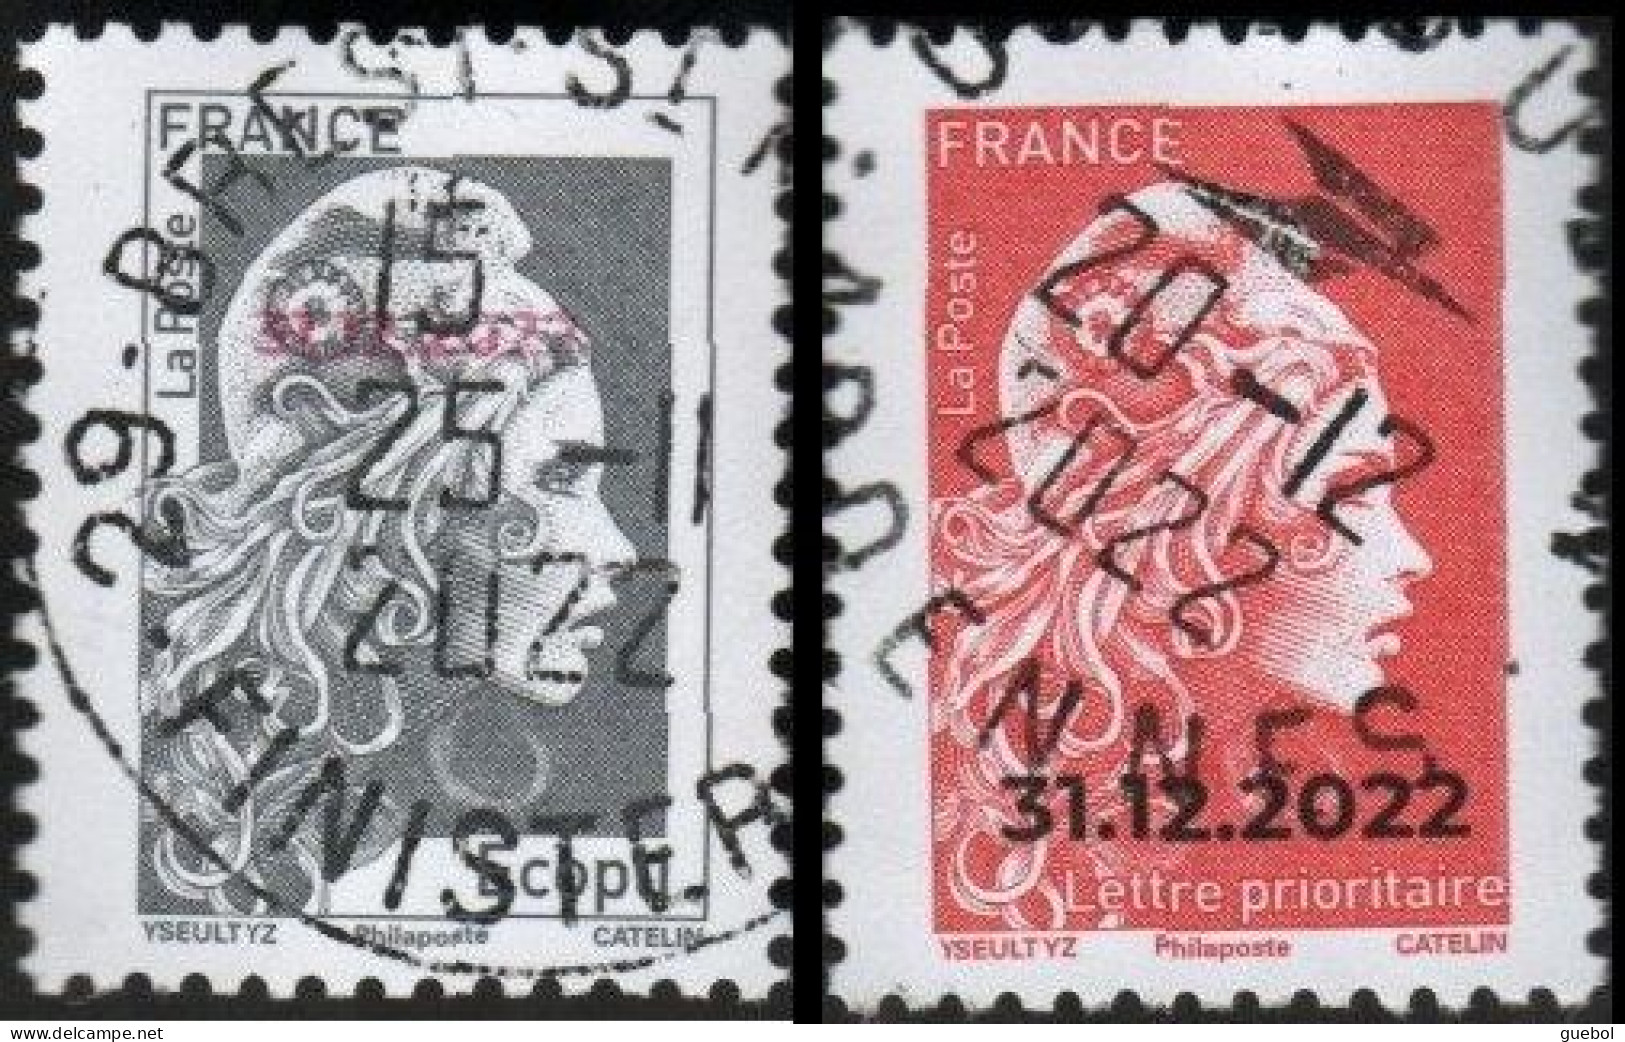 France Oblitération Cachet à Date N° 5642 A Et 5642 B ** Marianne L'engagée, écopli Et Prioritaire Surchargés 31.12.2022 - Used Stamps